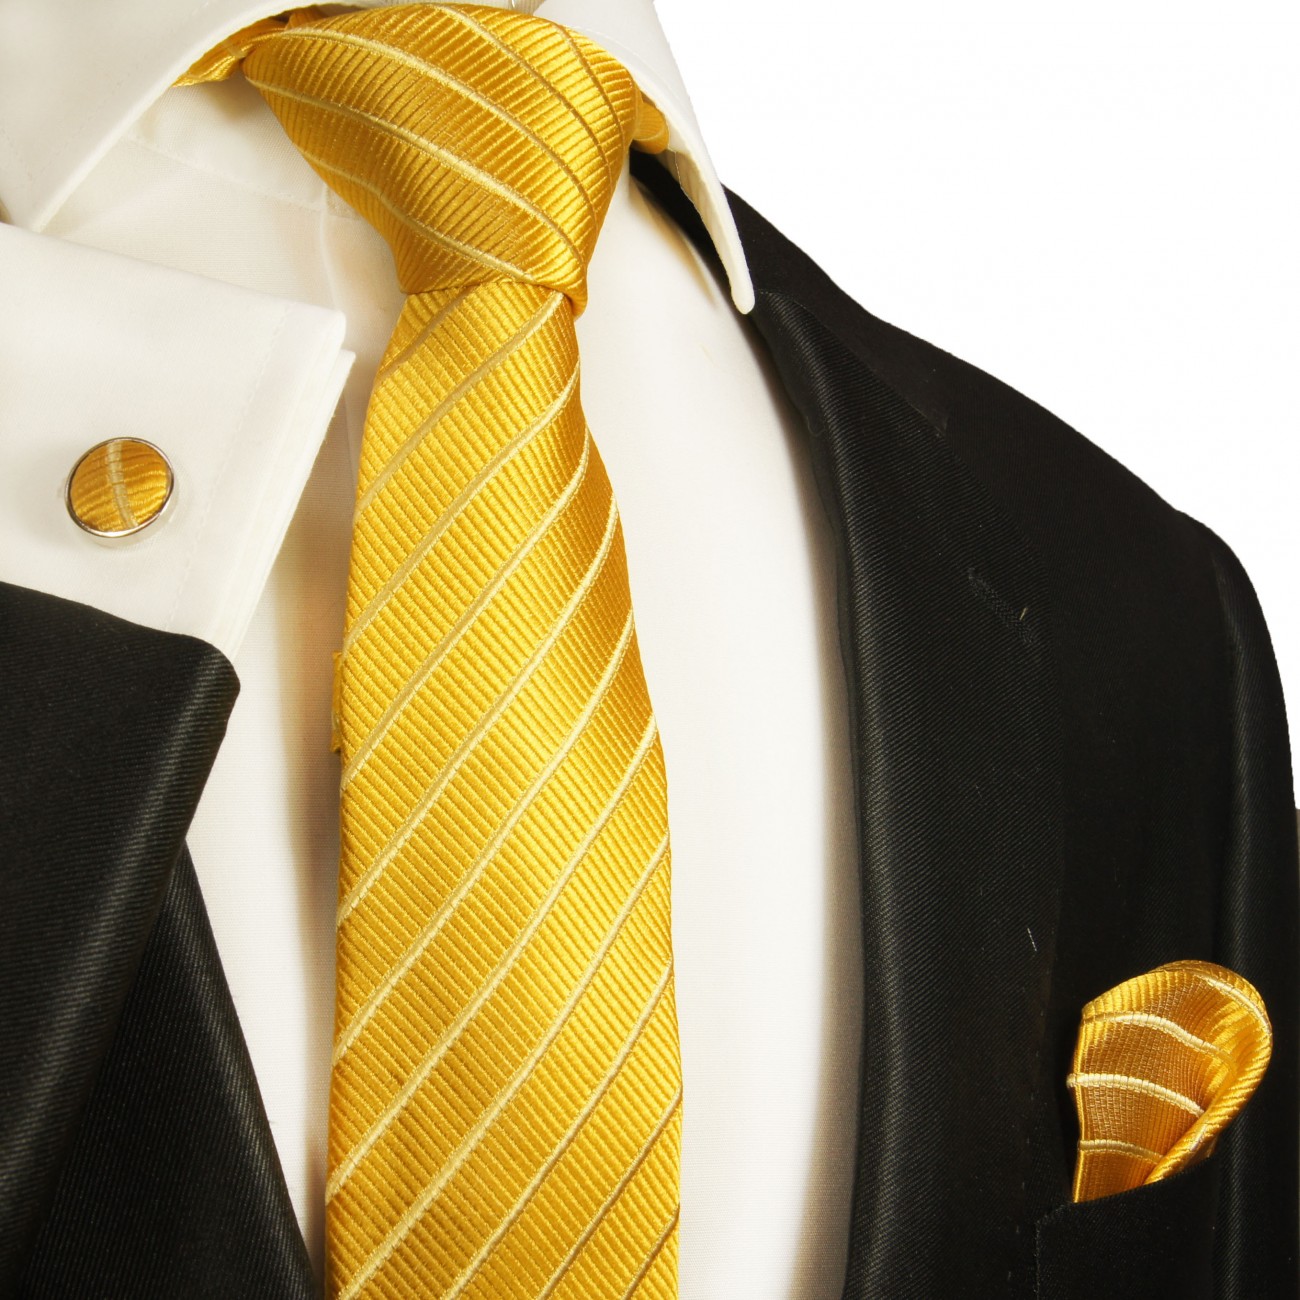 Krawatte schmal gold gestreift mit Einstecktuch und Manschettenknöpfe